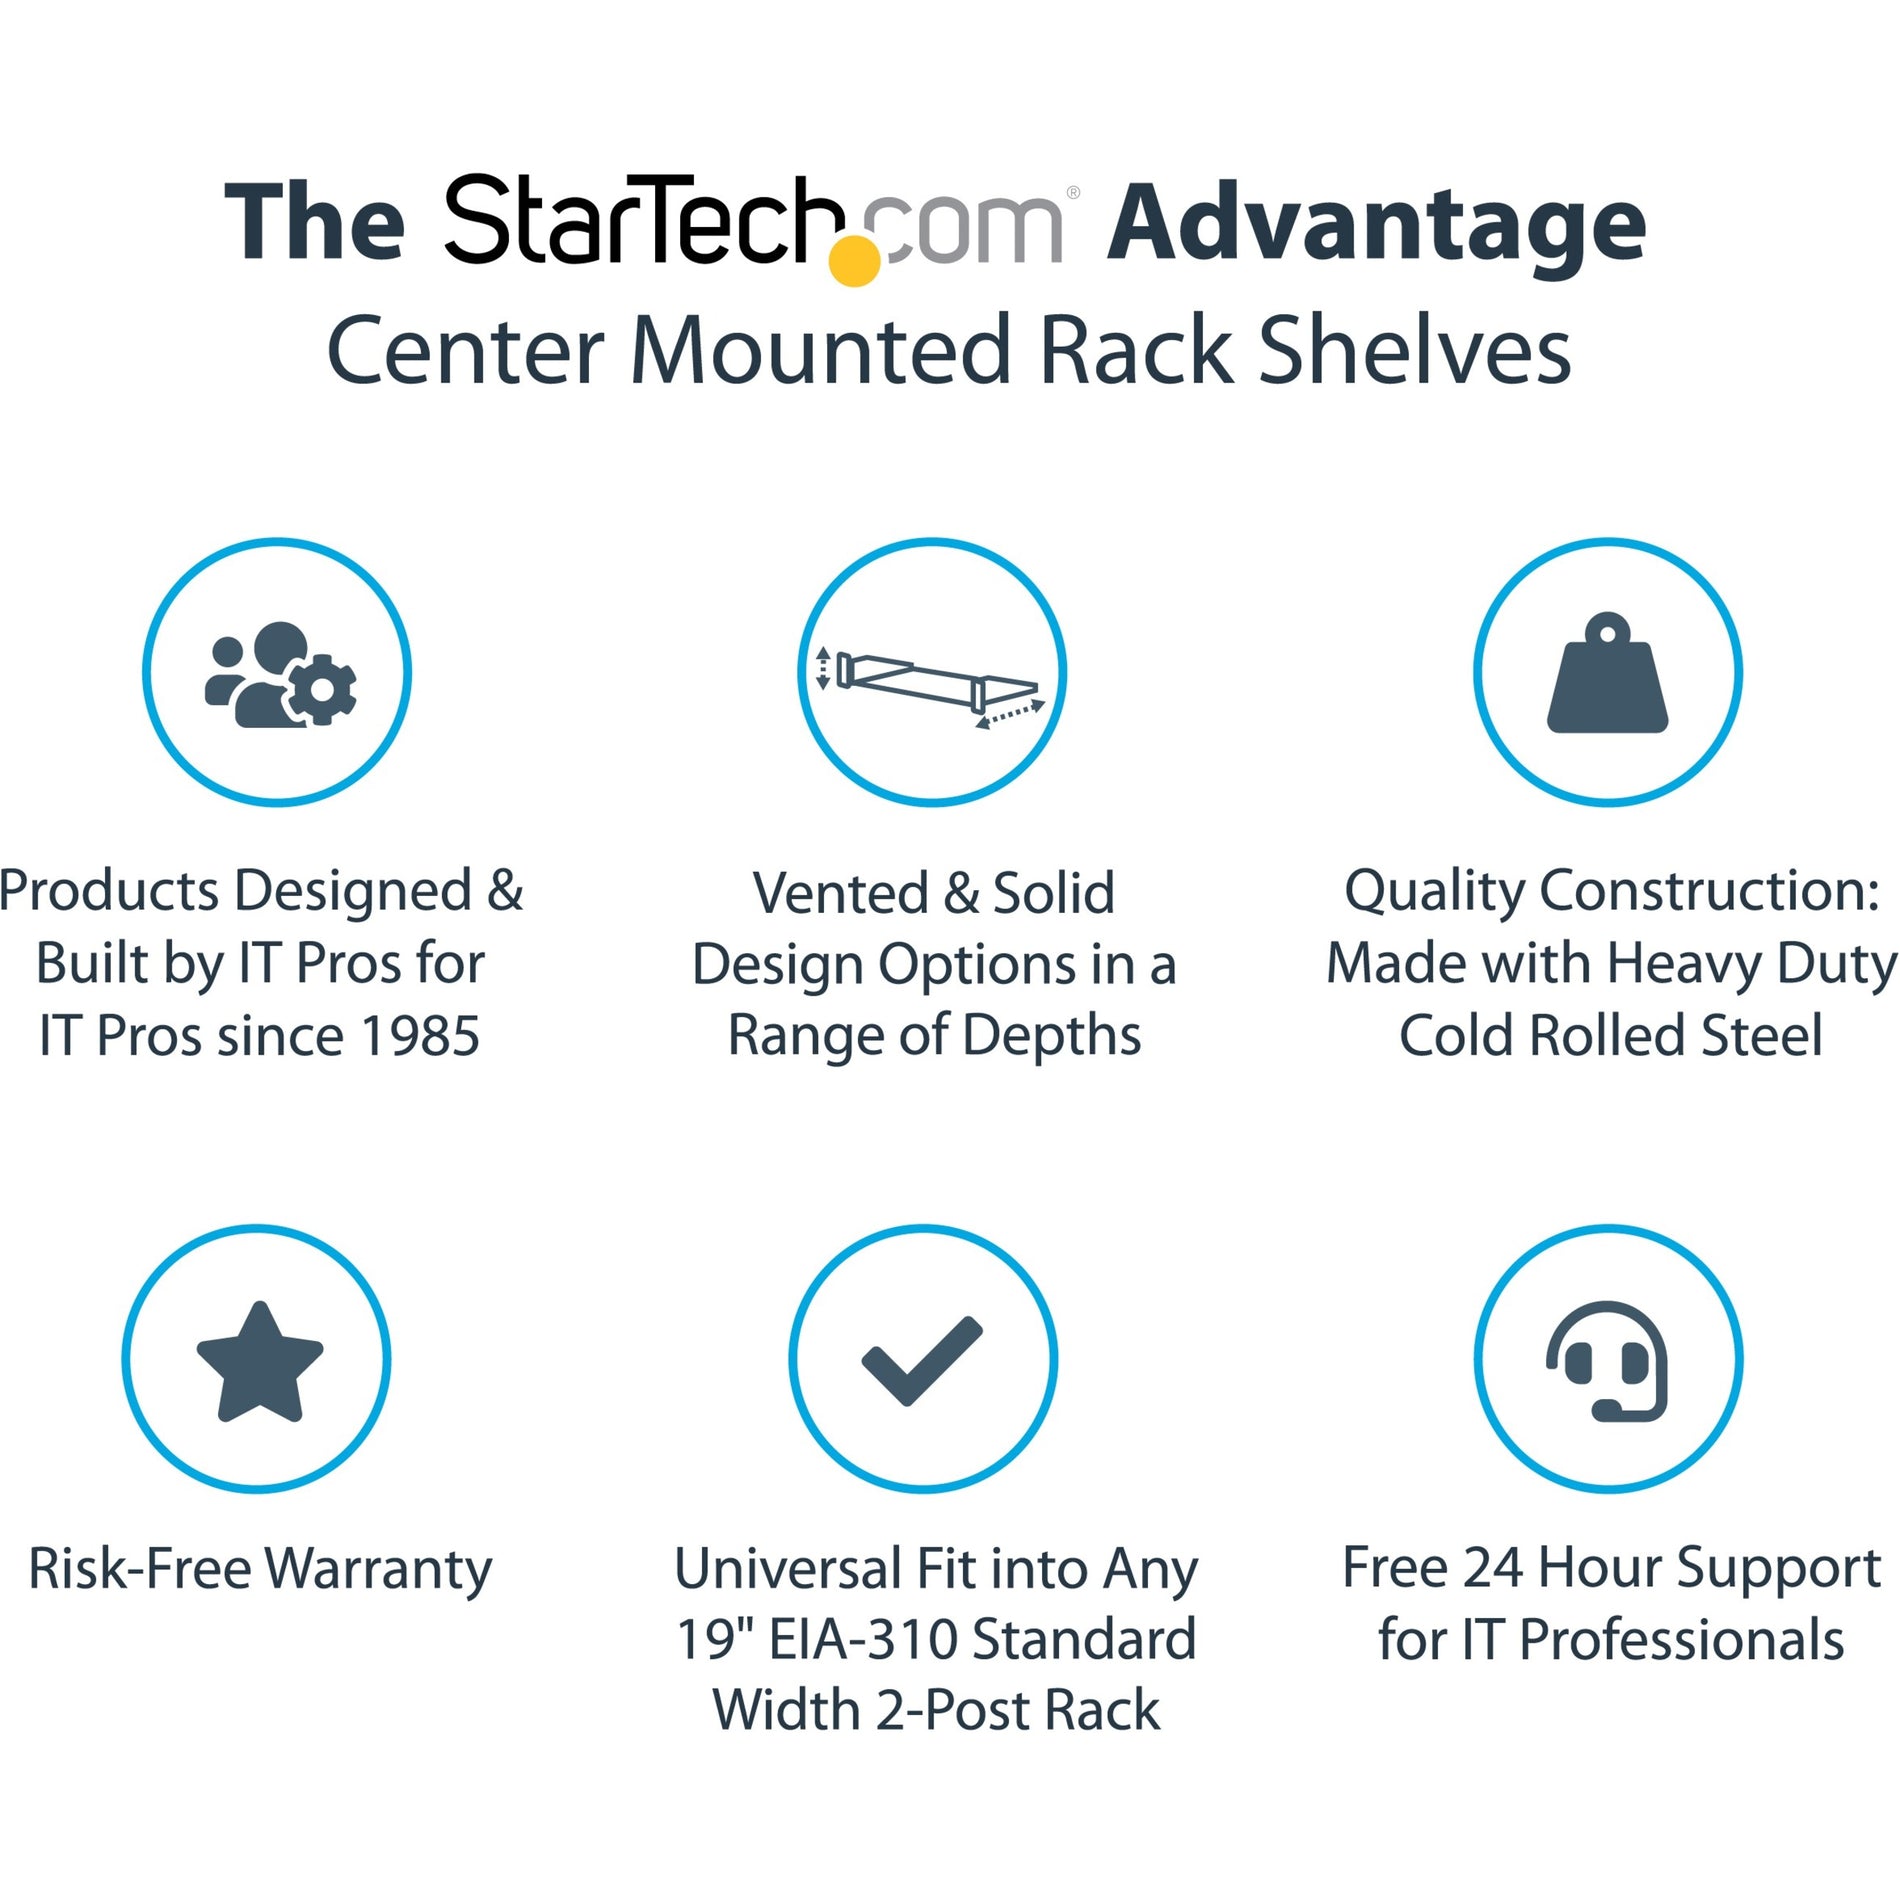 StarTech.com CABSHF2POSTV2 2U Server Rack Shelf - Vented, Up to 75 lb. - 2 Post Network Rack Shelf